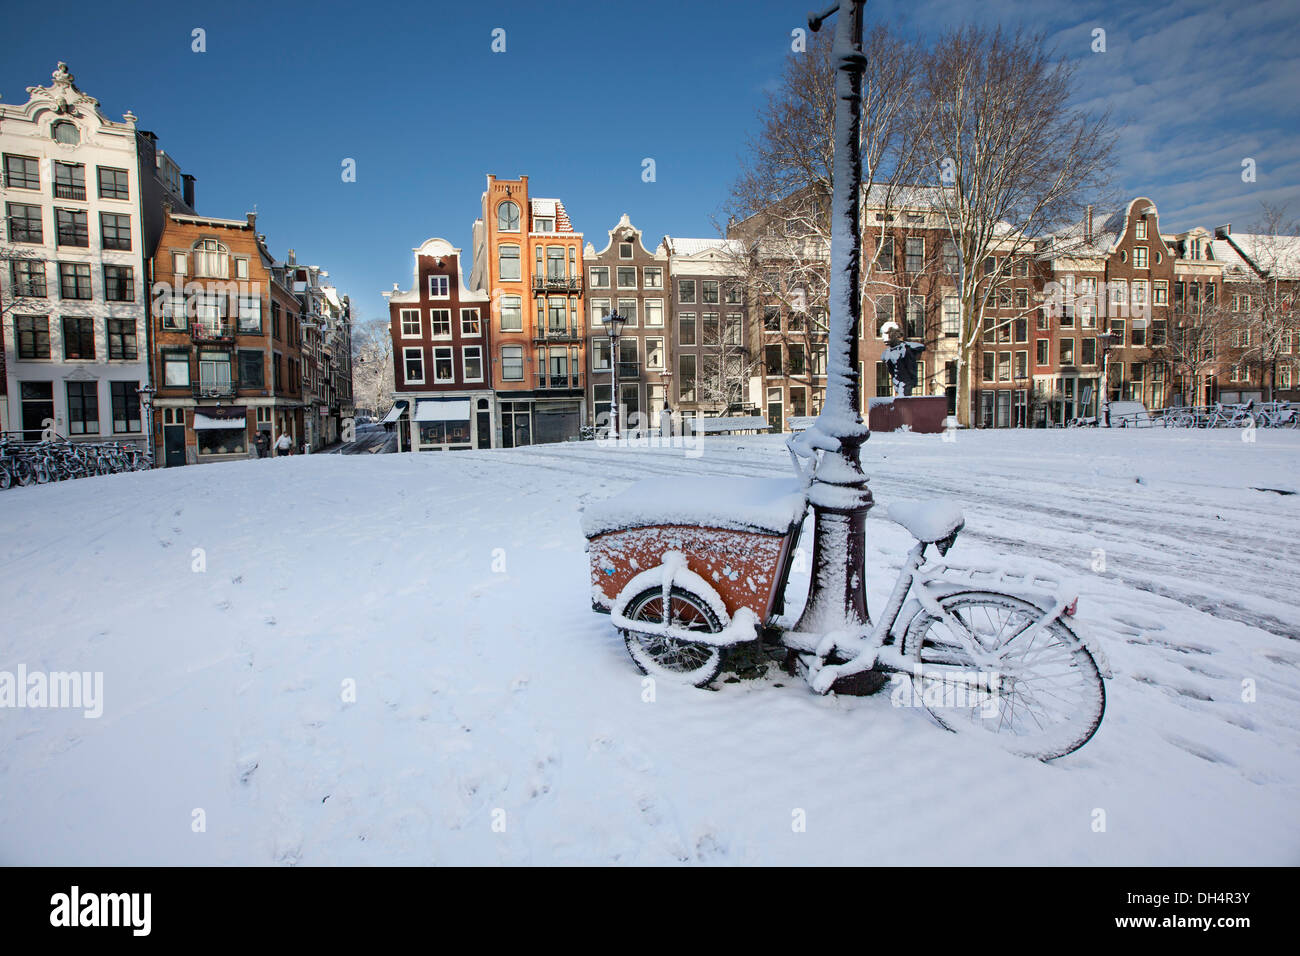 Les Pays-Bas, Amsterdam, Canal de maisons dans canal appelé Singel. Unesco World Heritage site. Tricycle ou vélo de cargaison. Snow Banque D'Images